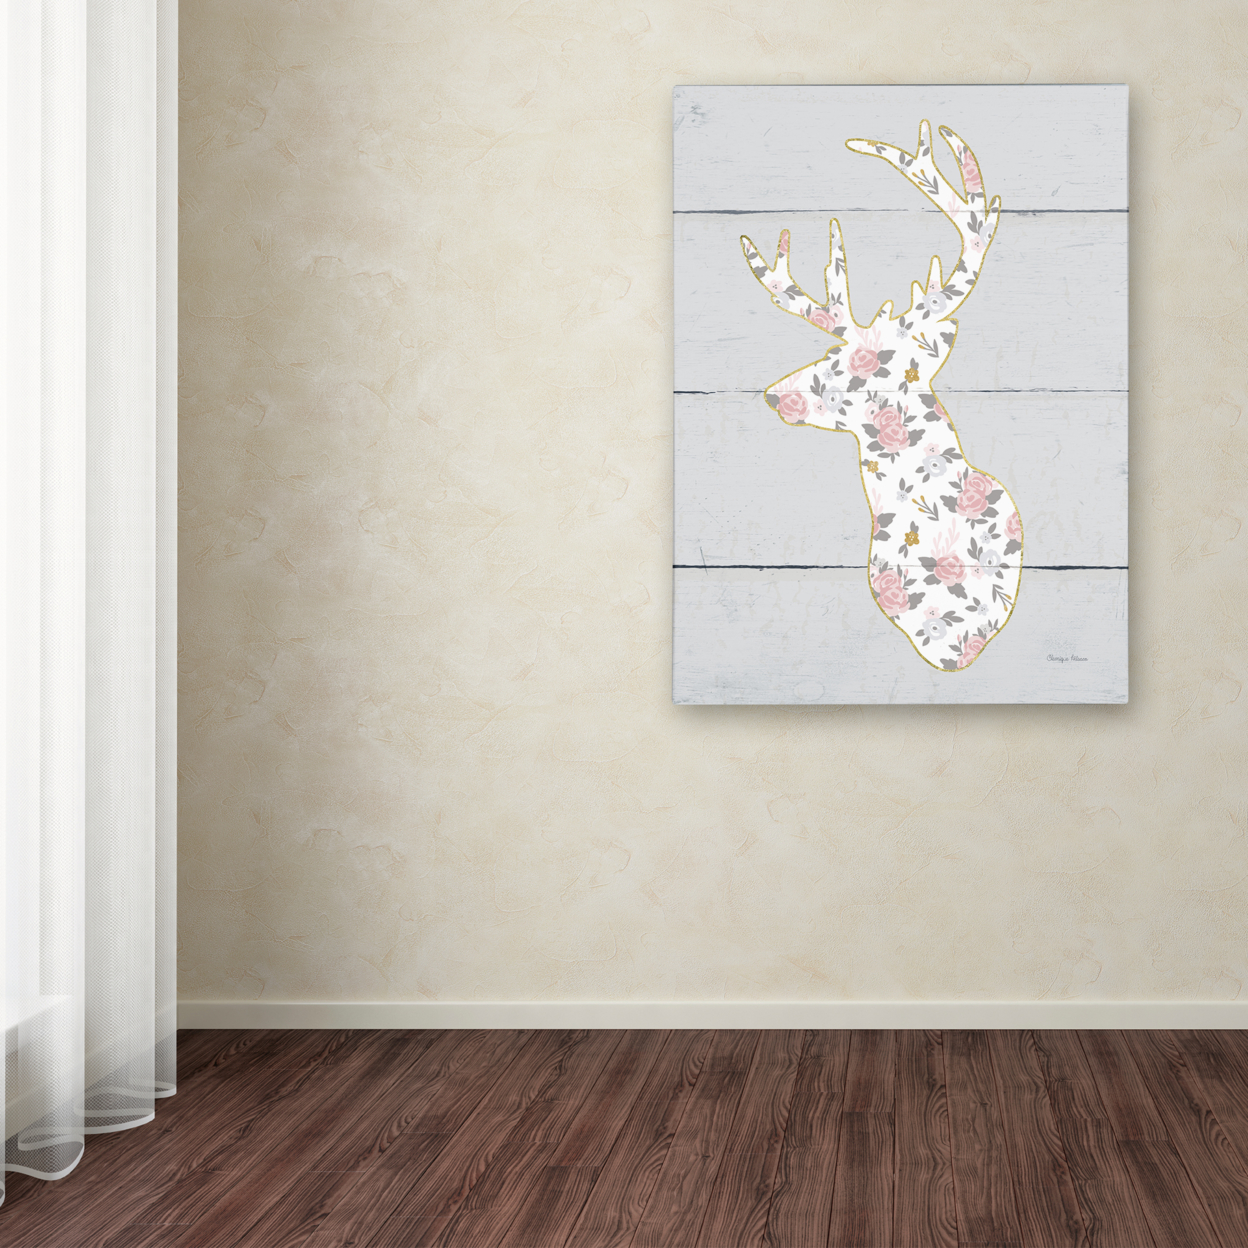 Cleonique Hilsaca 'Floral Deer II' 14 X 19 Canvas Art